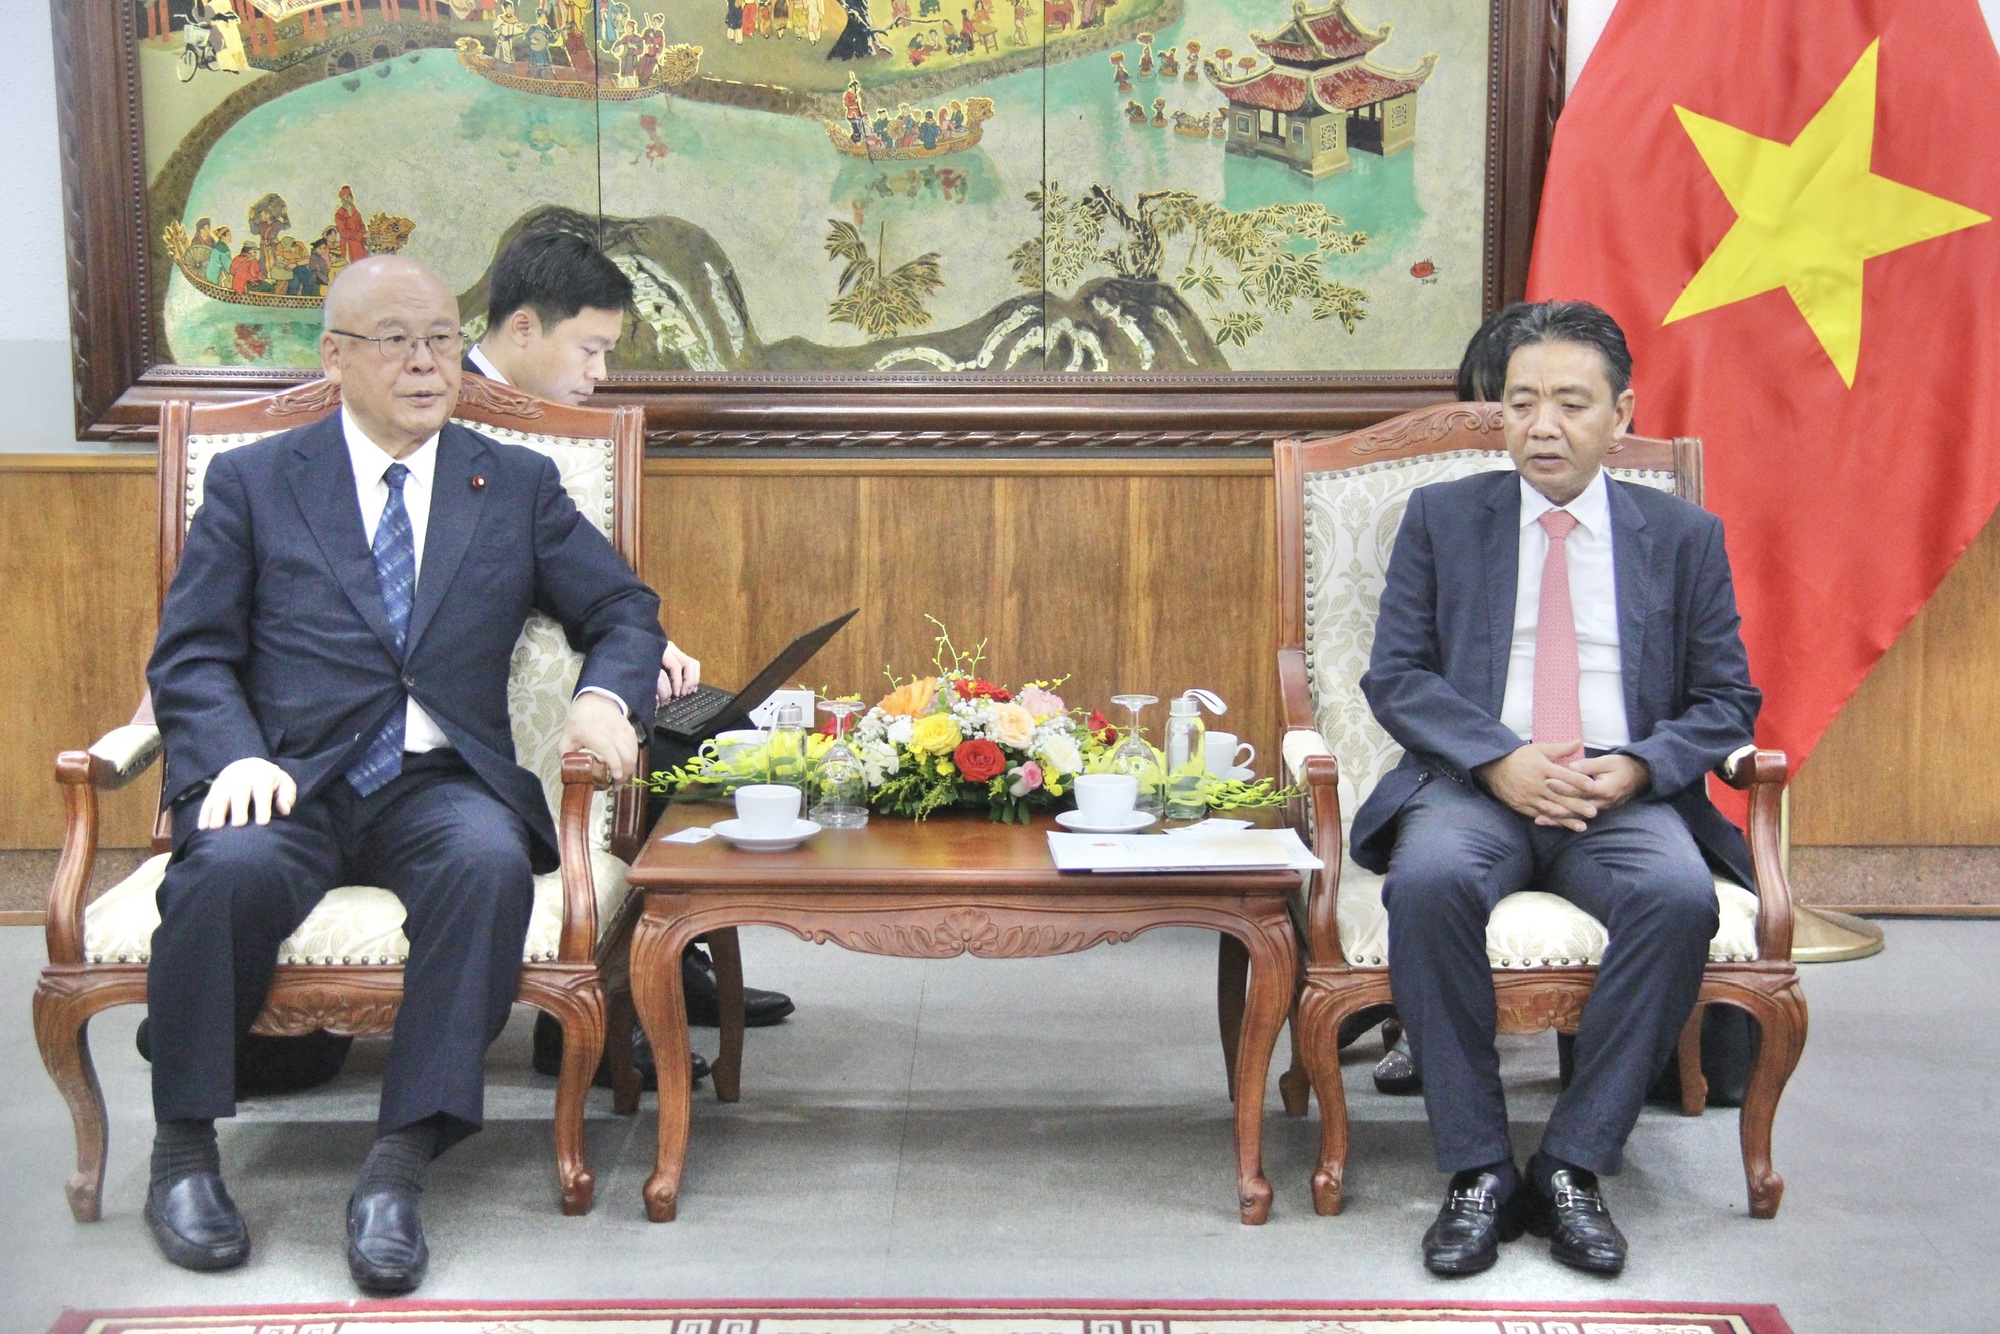 Hợp tác quảng bá hiệu quả văn hóa, góp phần làm sâu sắc hơn mối quan hệ tốt đẹp giữa Việt Nam- Nhật Bản